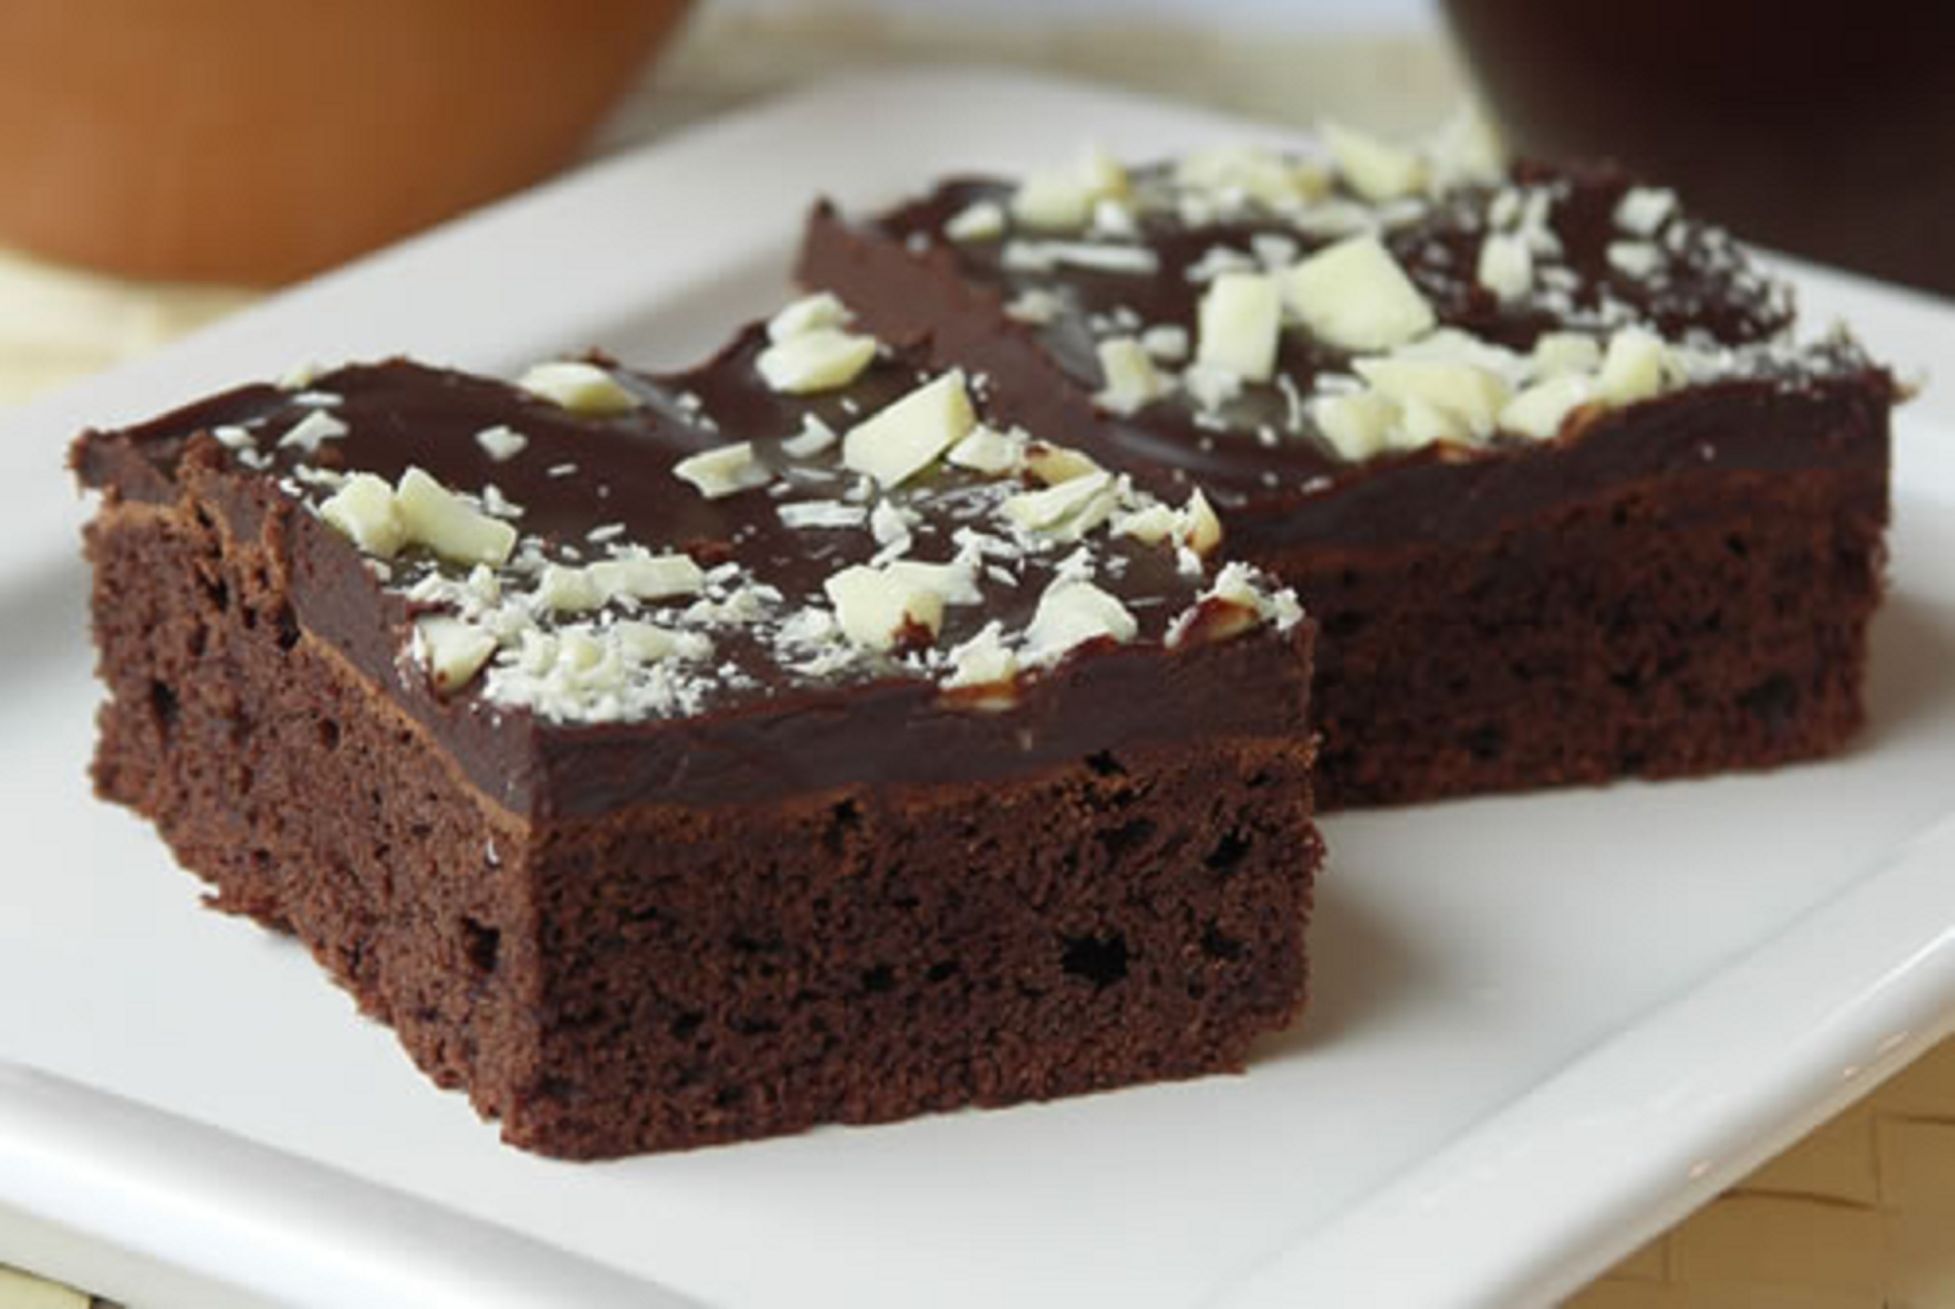 čokoláda - brownie